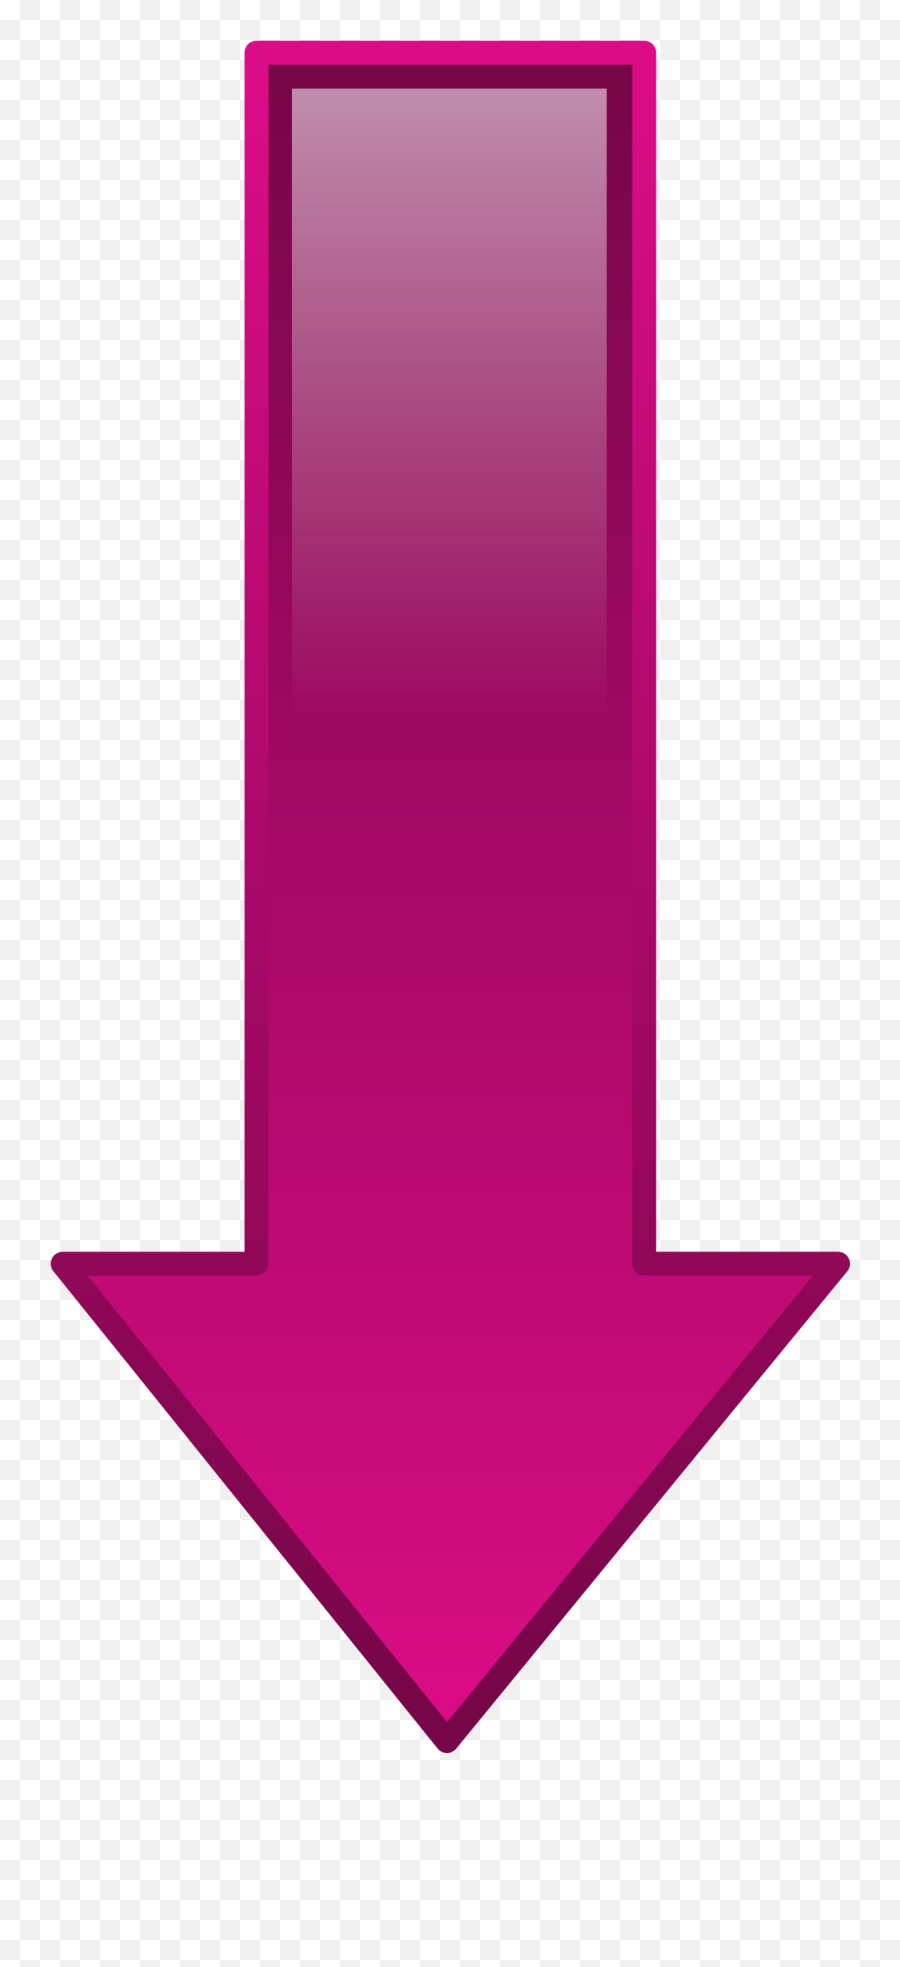 Download Public Domain Clip Art Image - Pink Arrow Pink Down Arrow Transparent Emoji,Arrows Transparent Background